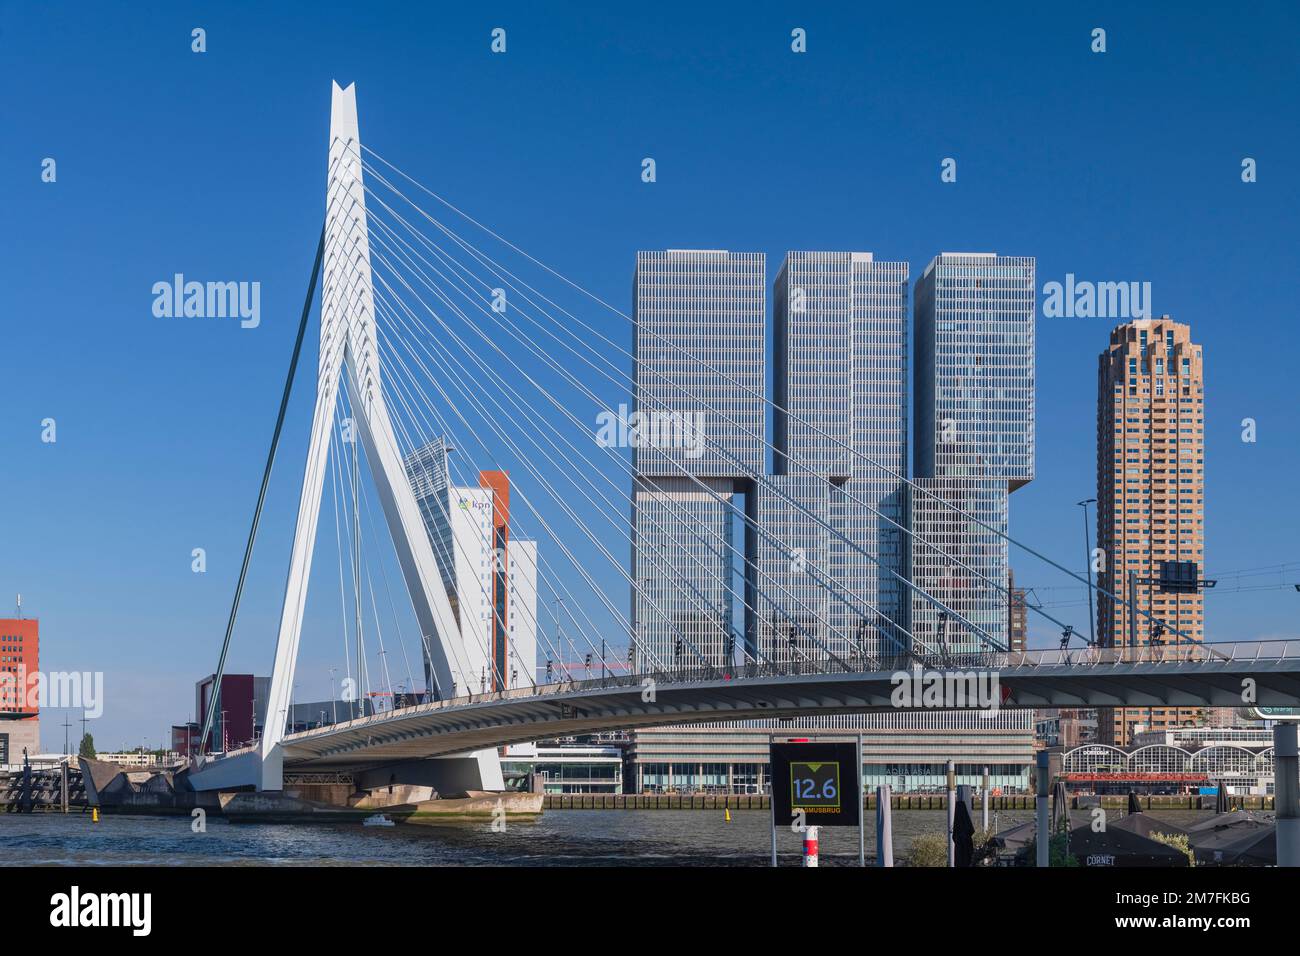 Hollande, Rotterdam, vue sur l'Eramusbrug ou sur le pont Erasmus au-dessus de la rivière Nieuwe Maas avec la section 3 du bâtiment de Rotterdam en arrière-plan. Banque D'Images